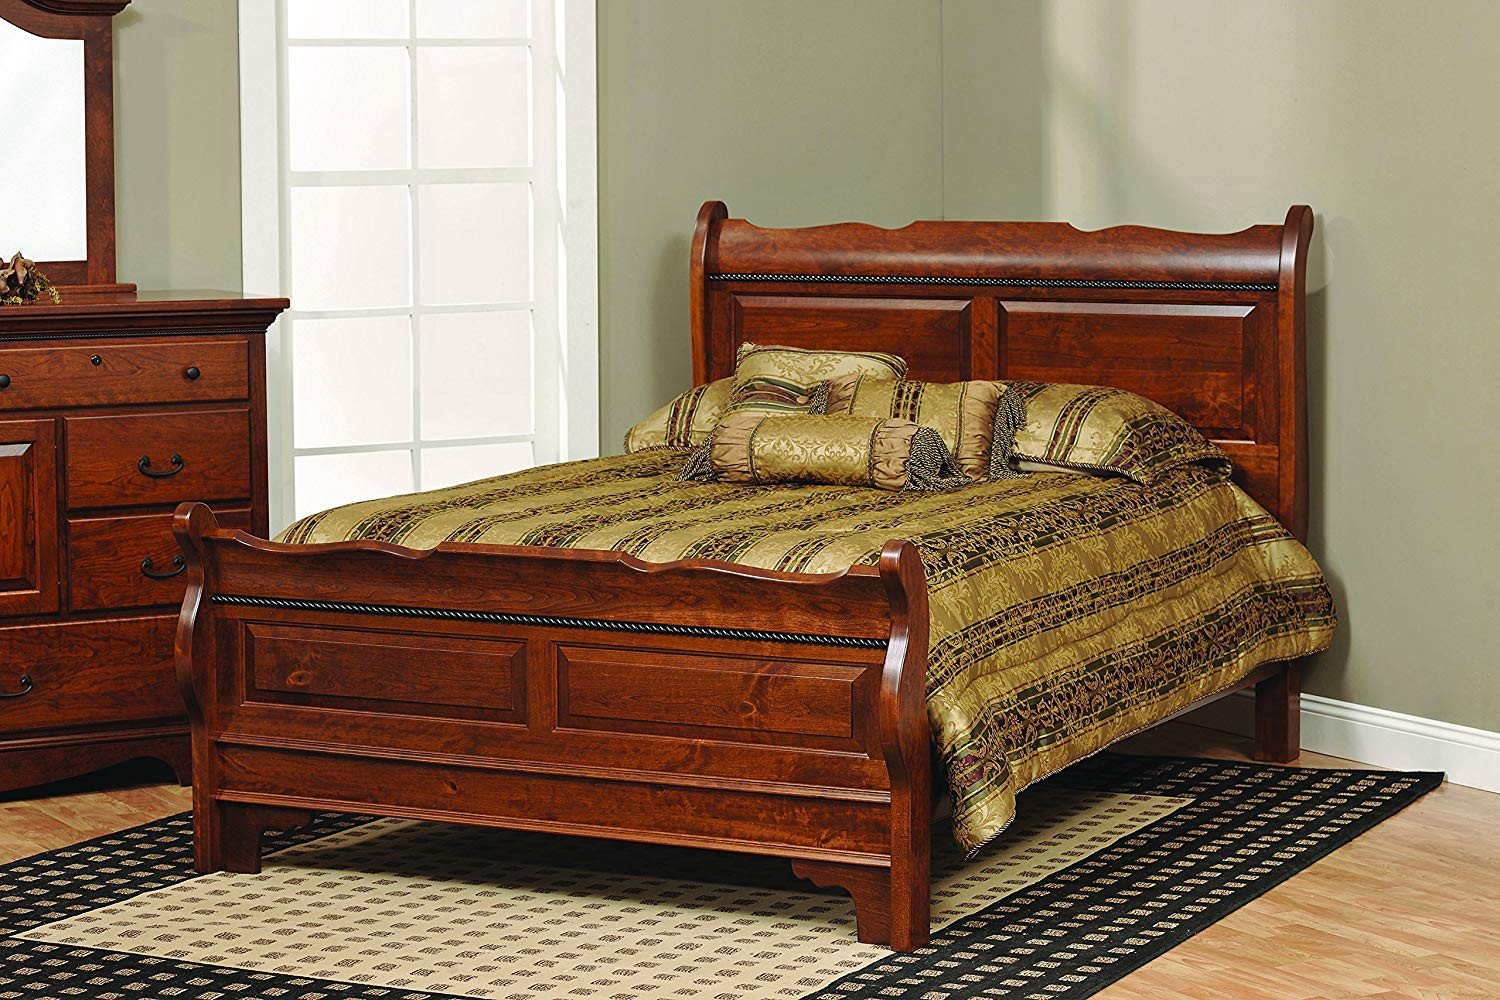 Rustic Queen Bedroom Set Luxury Amazon Amish Merlot King solid Rustic Cherry Wood